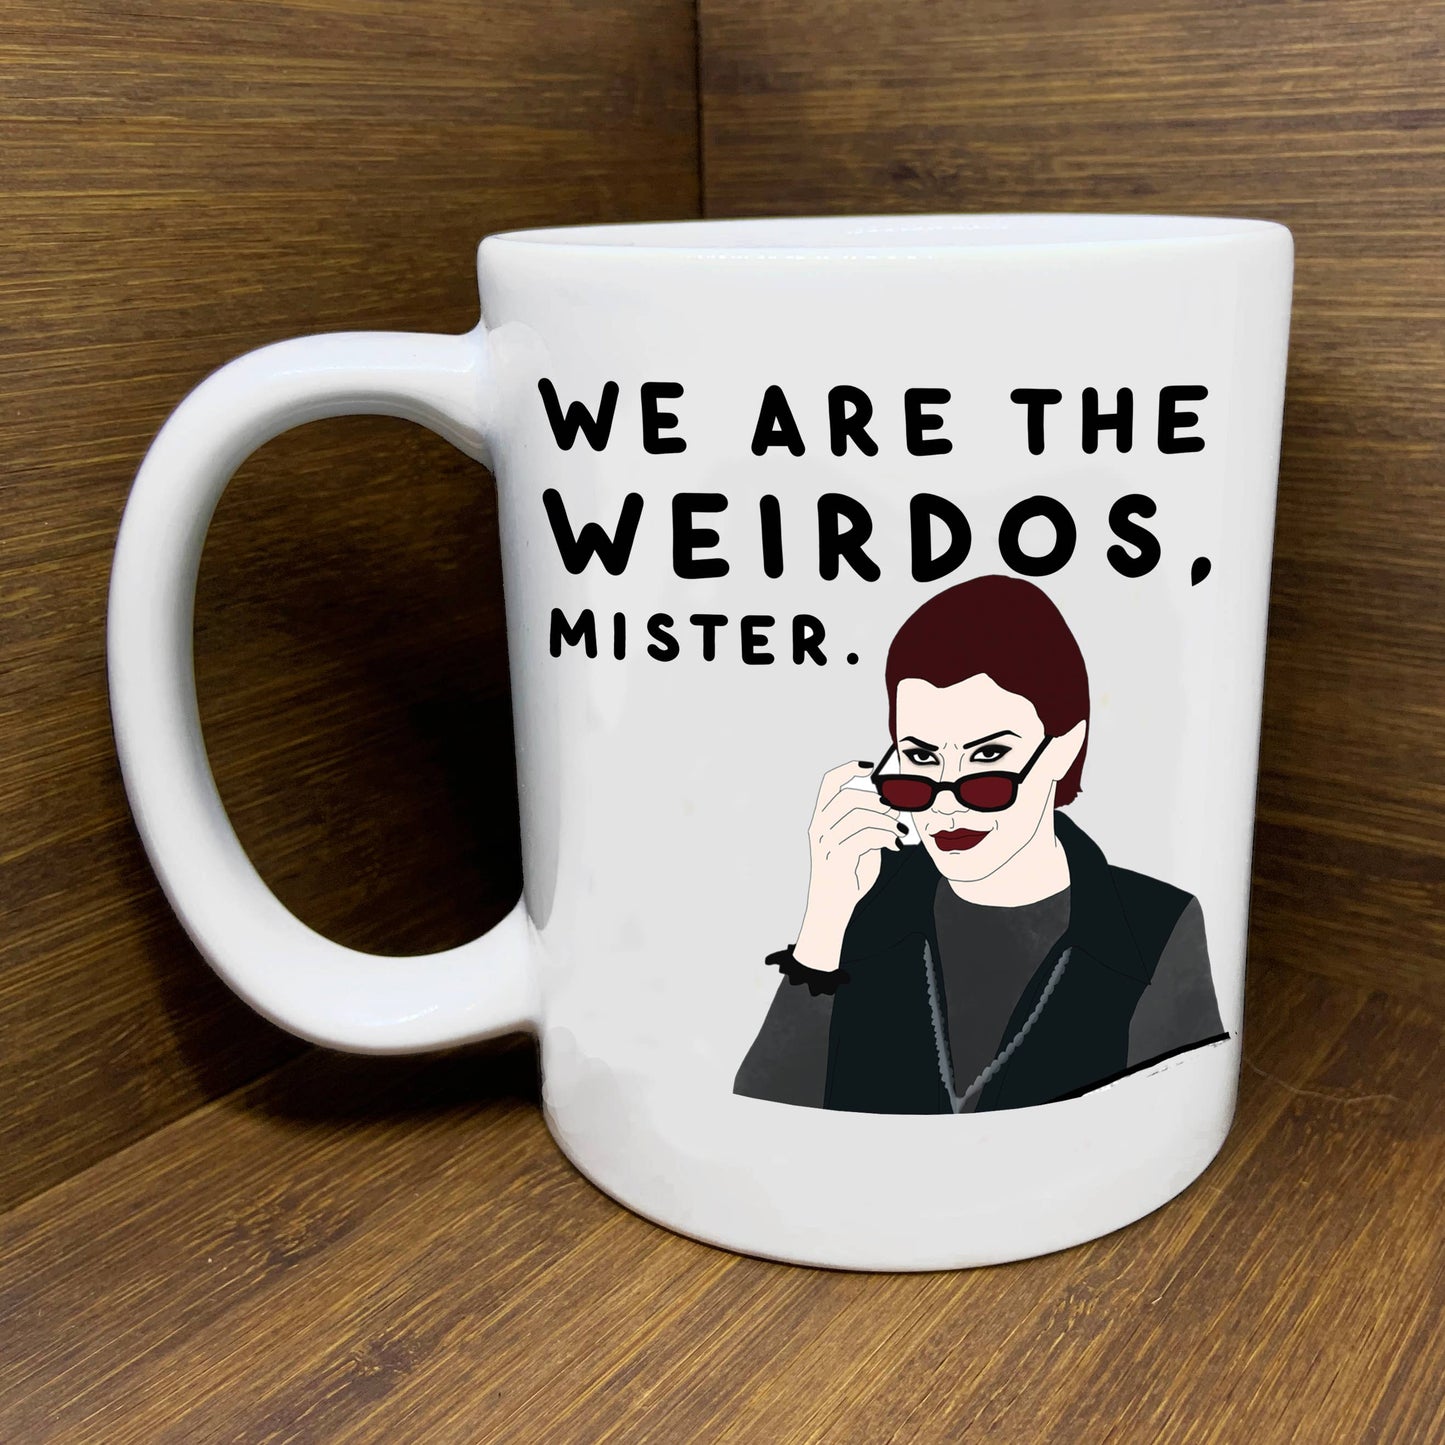 The Craft "Weirdos" Mug